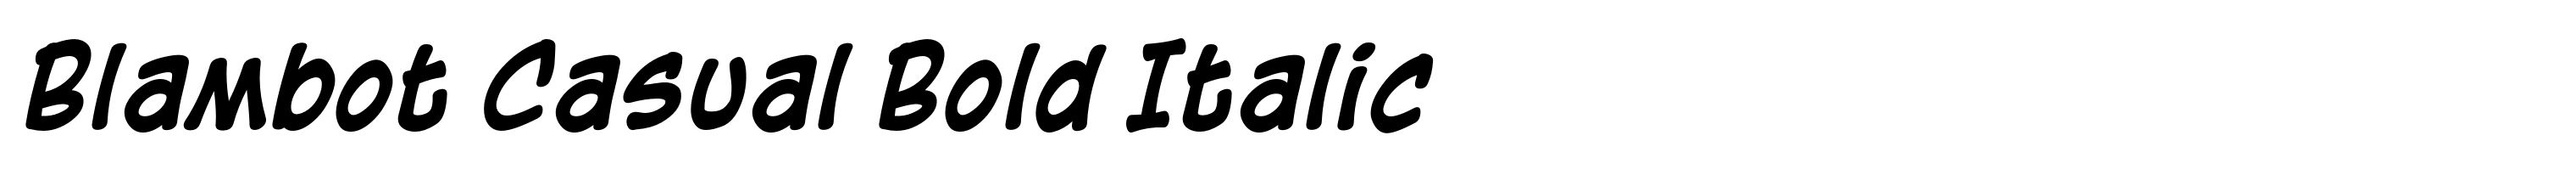 Blambot Casual Bold Italic